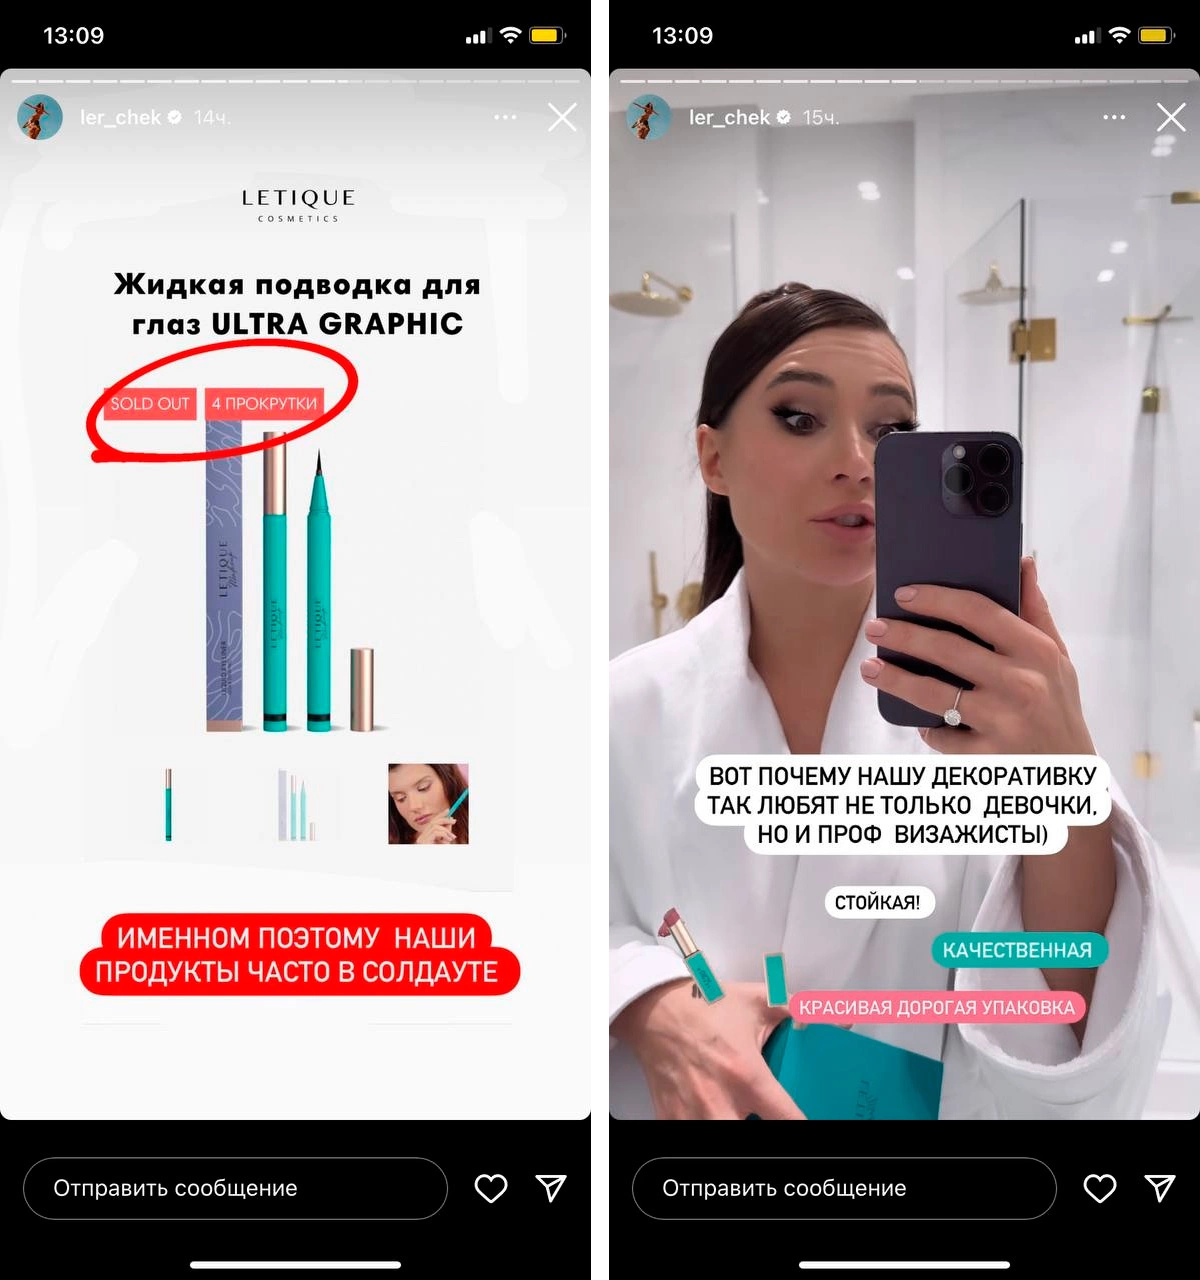 ler_chek / Instagram (владелец соцсети компания Metа признана в России экстремистской организацией и запрещена)